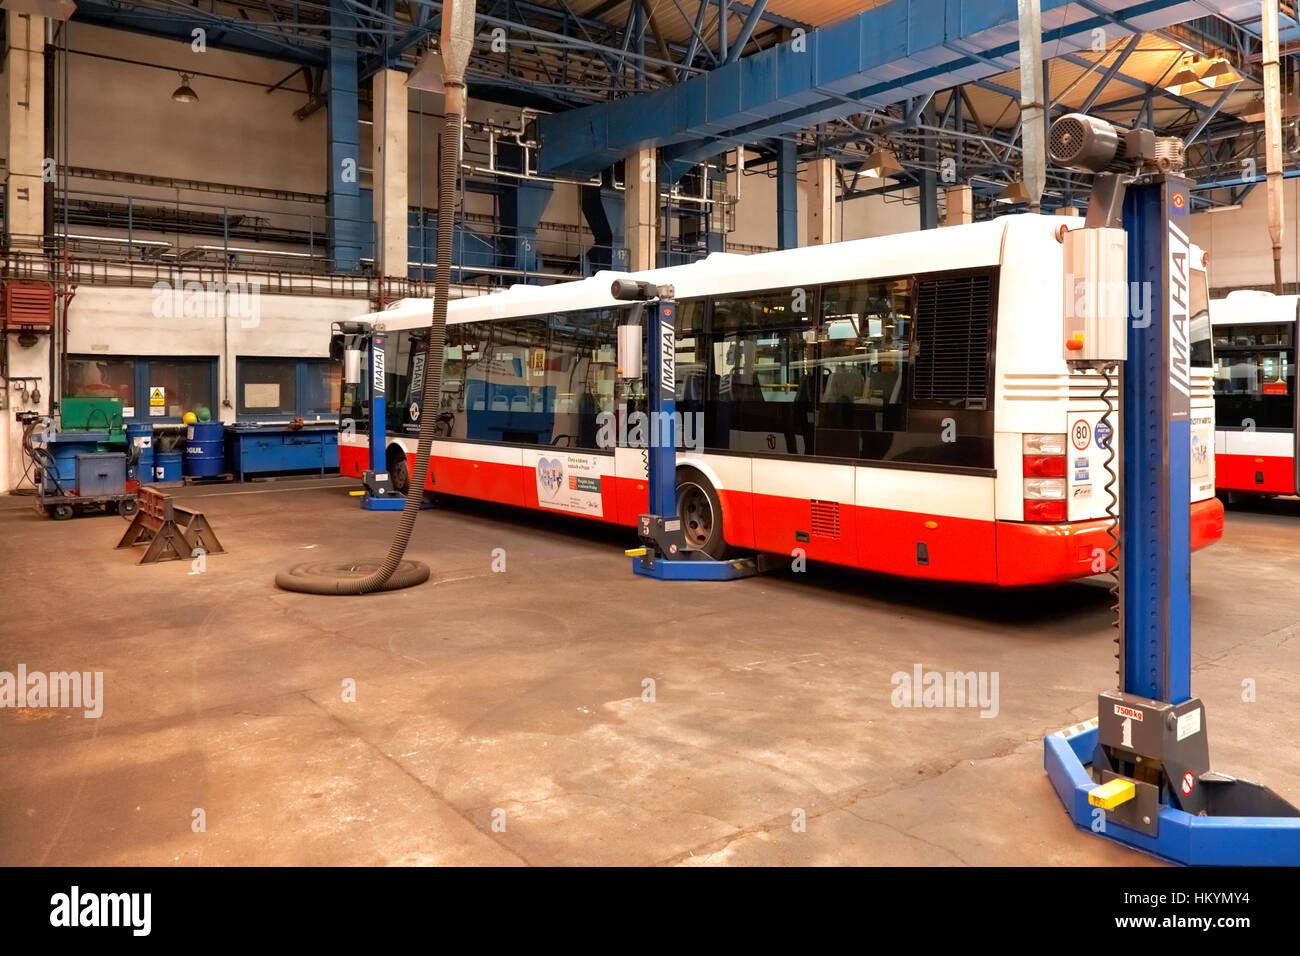 Prag, Tschechische Republik - 17.September: Abnahme des Chassis des öffentlichen Bussen Workshop im Depot Hostivař am Tag der offenen Tür in der Prager öffentliche Tran Stockfoto